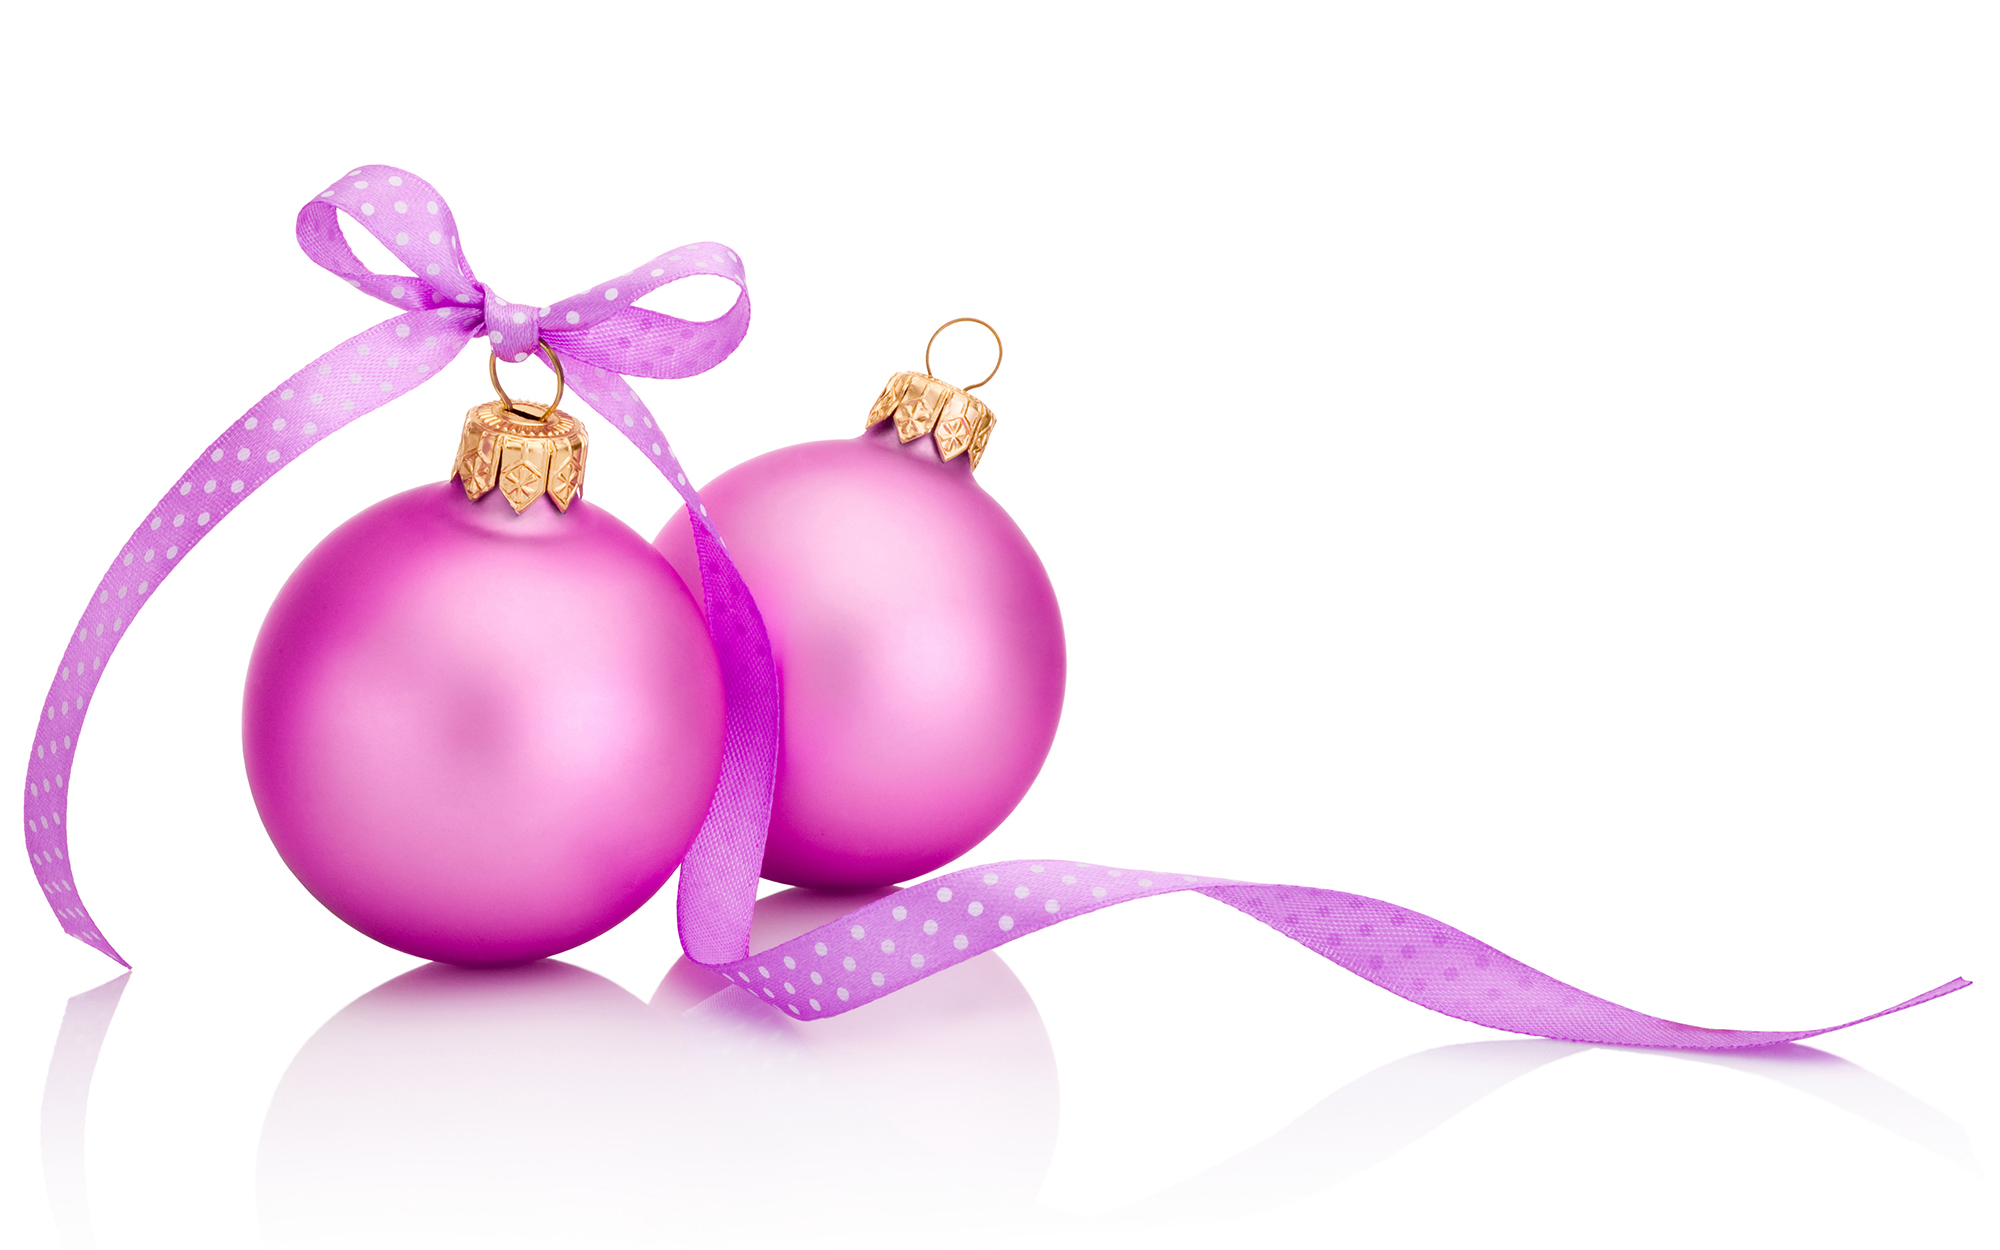 bright pink Christmas ornaments with pink polka dot ribbon